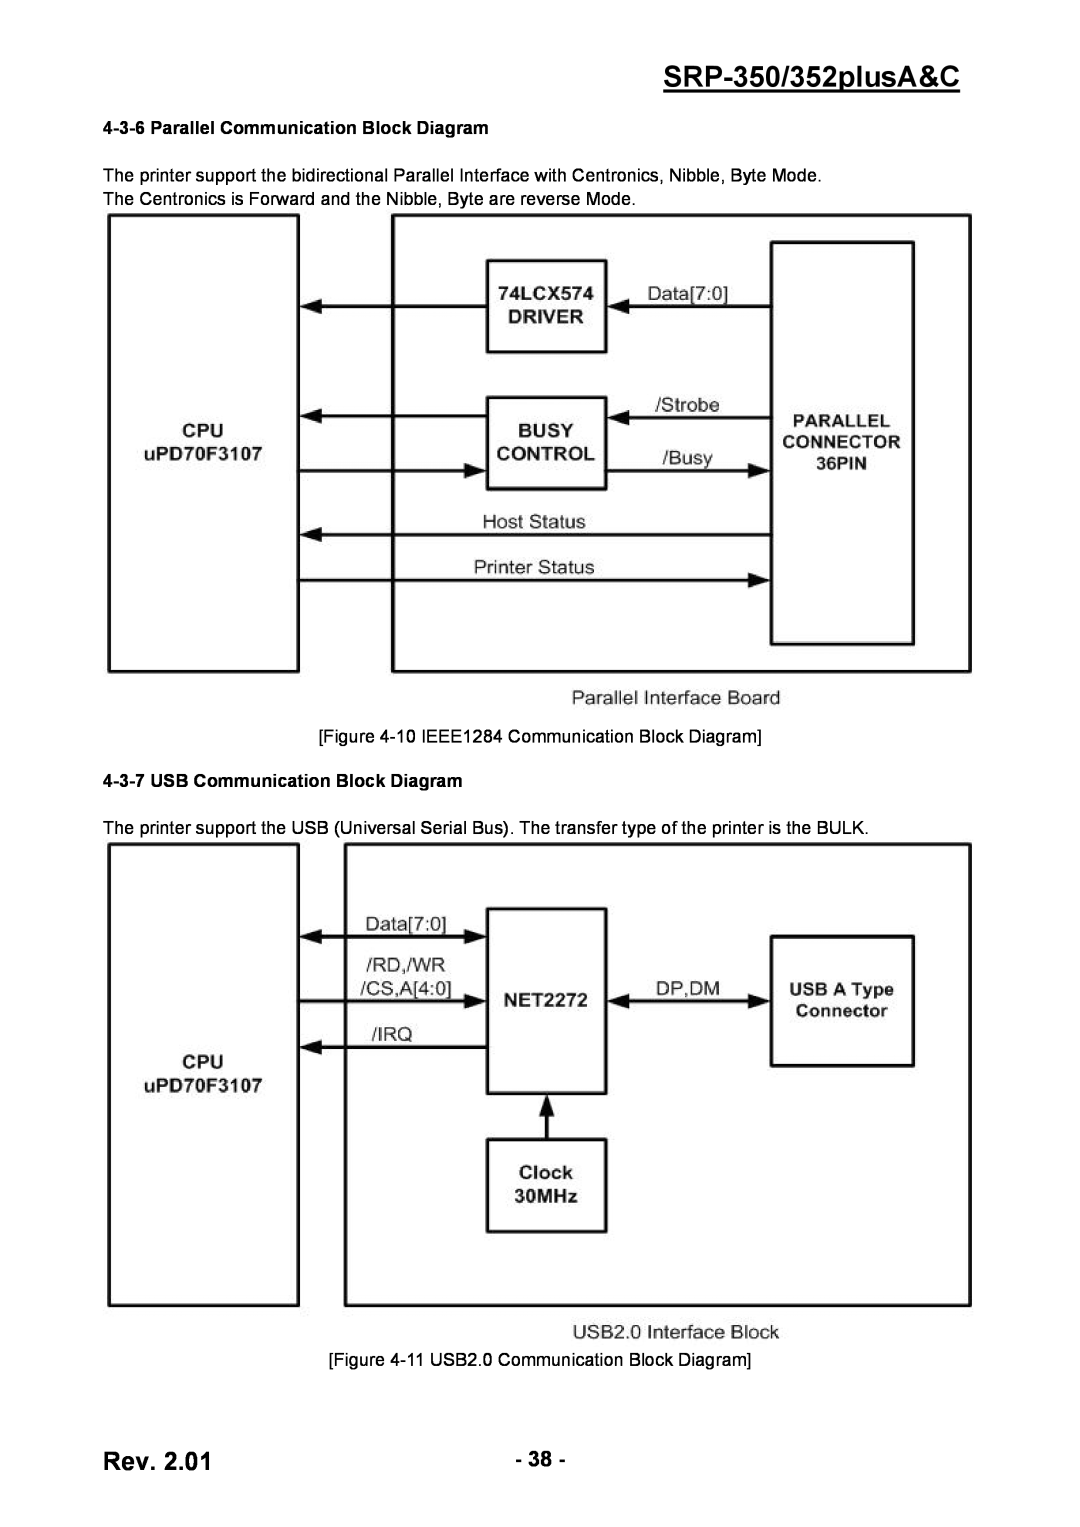 BIXOLON service manual SRP-350/352plusA&C, Parallel Communication Block Diagram, USB Communication Block Diagram 